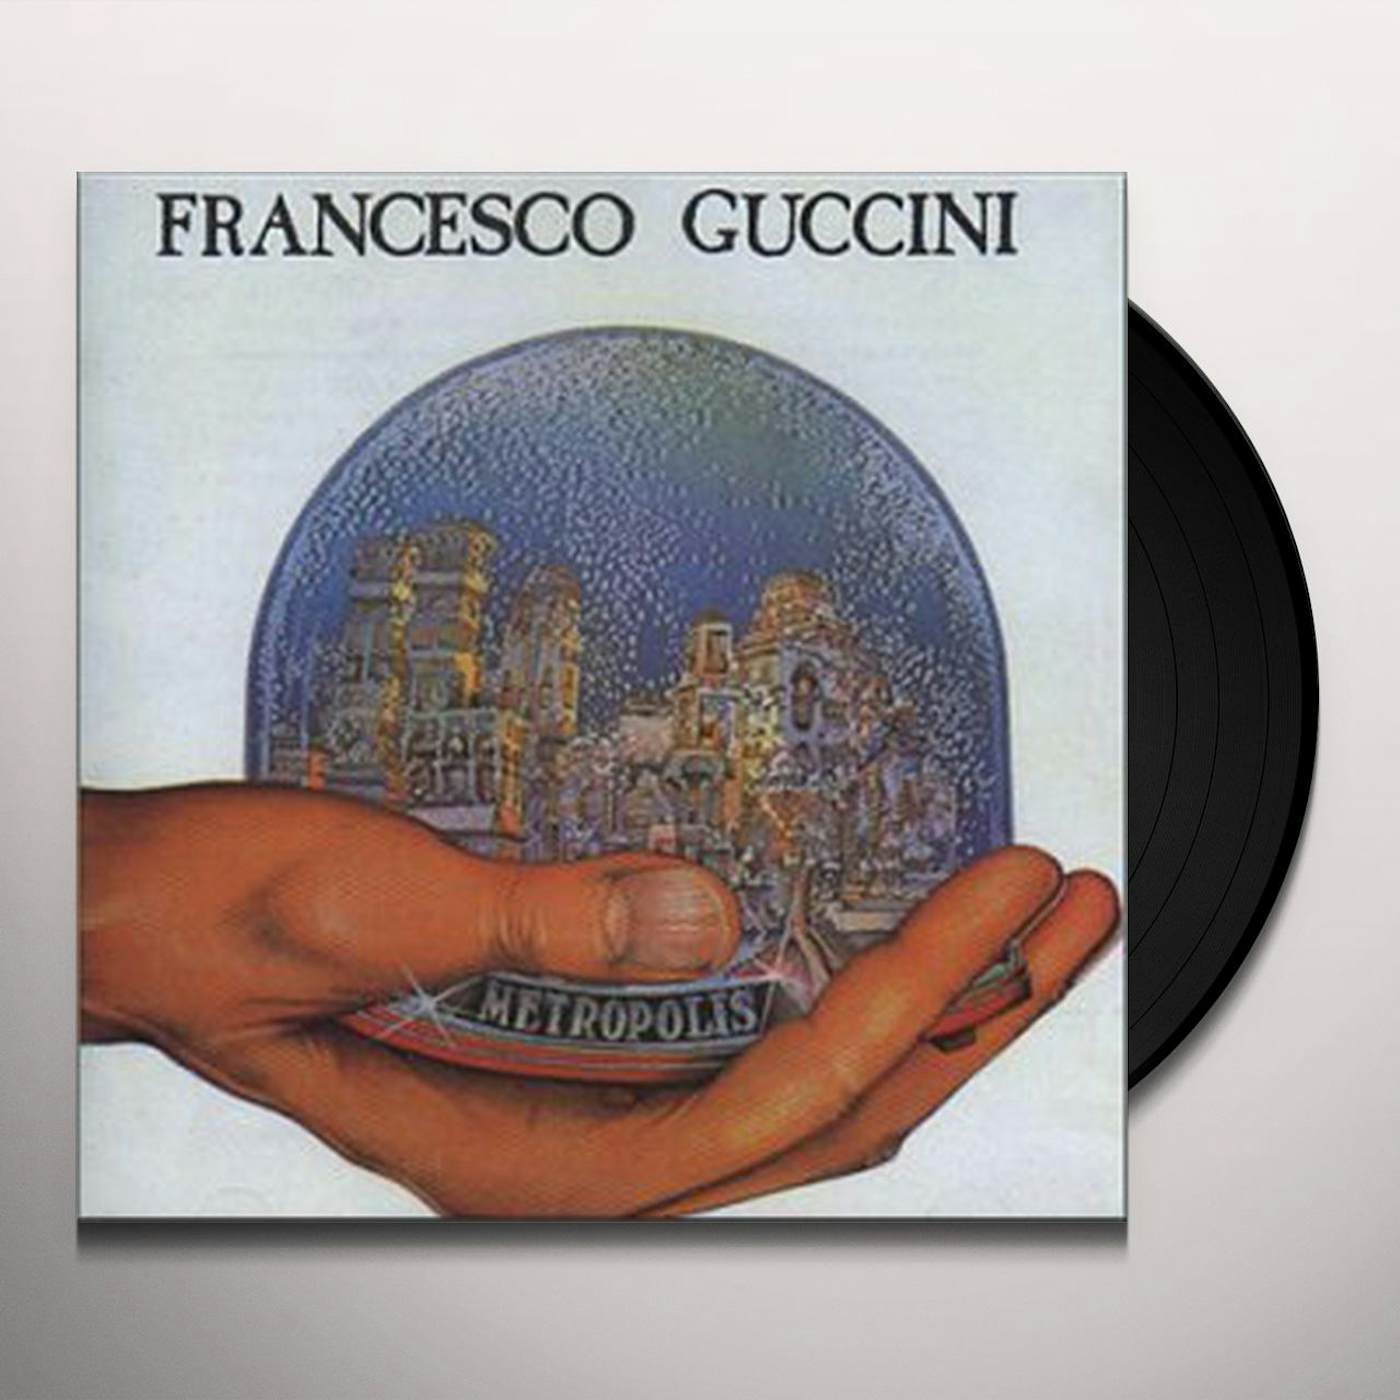 Francesco Guccini Metropolis Vinyl Record